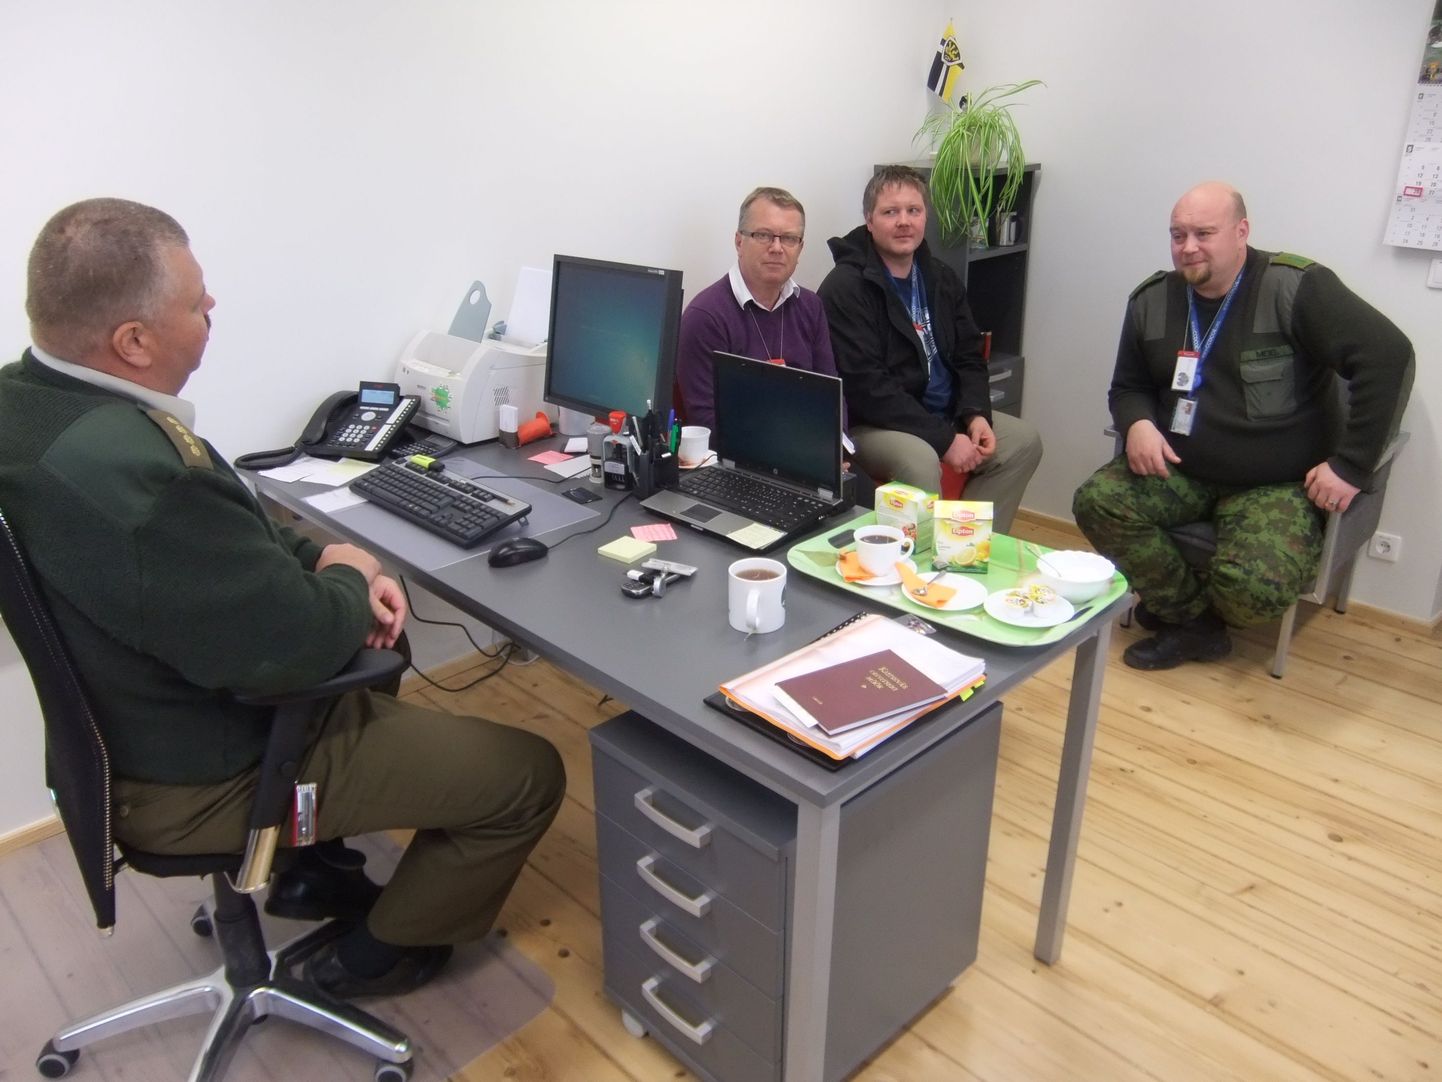 Esmaspäeval kohtusid Viru maleva pealik kapten Rein Luhaväli, Urmas Tamm ja küberkaitseüksuse esindajad, et arutada
loodava küberkaitseüksuse plaane